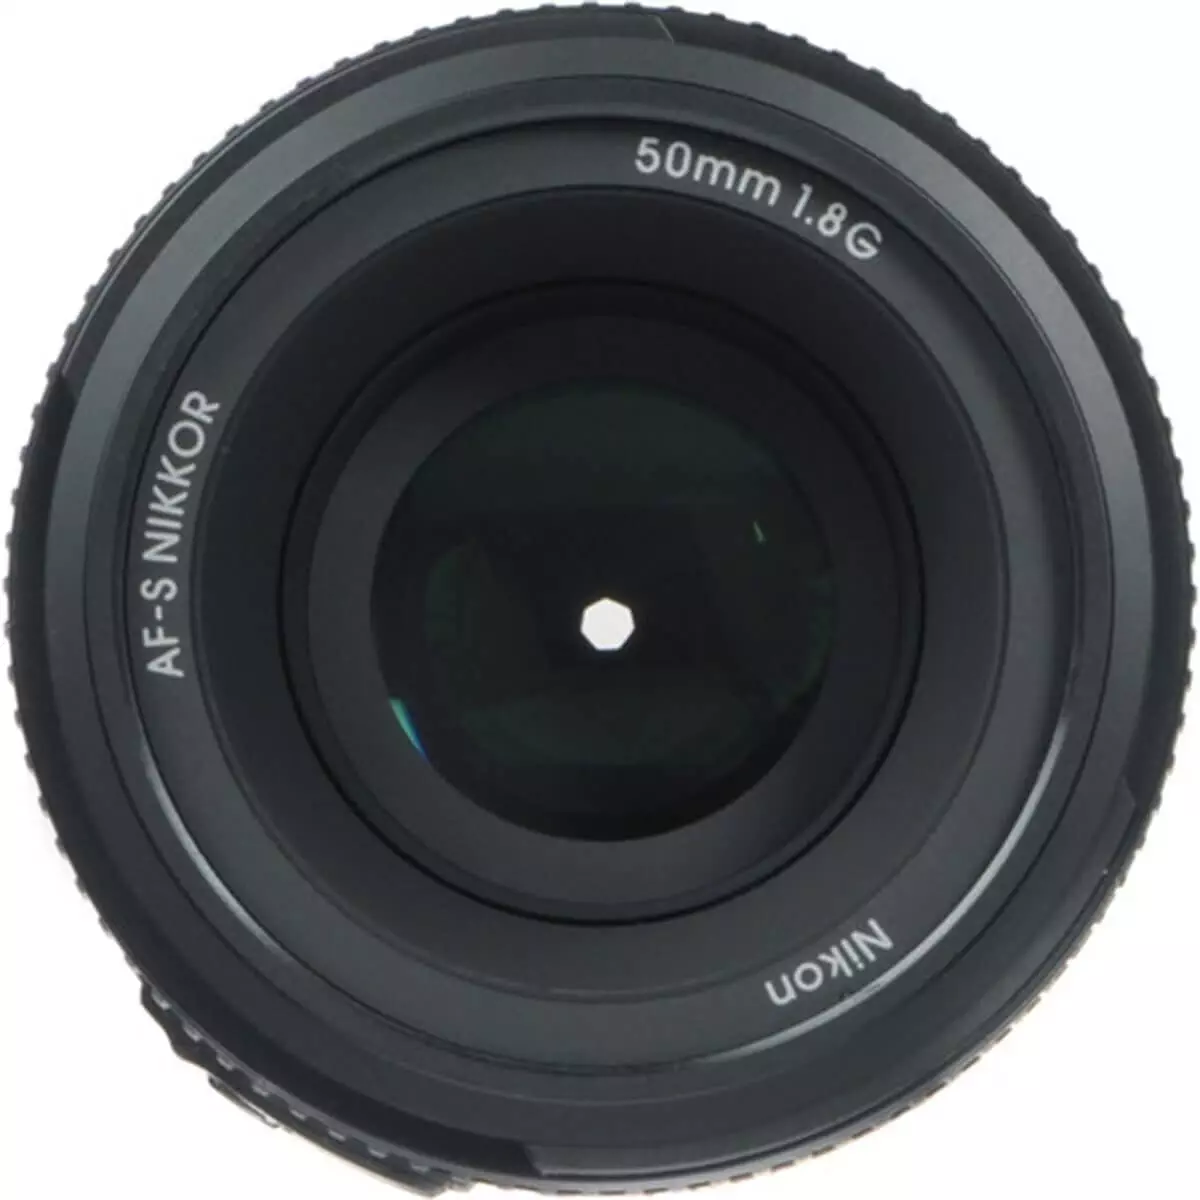 Nikon Lens AF-S 50mm F1.8 G 4